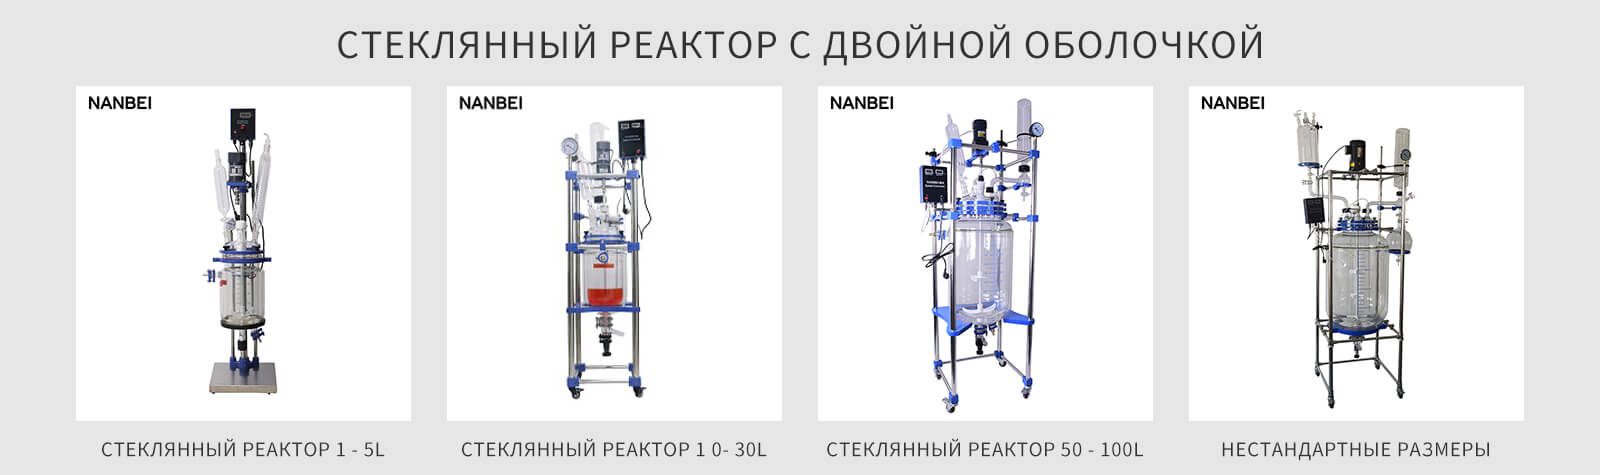 Стеклянный реактор на 100 литров